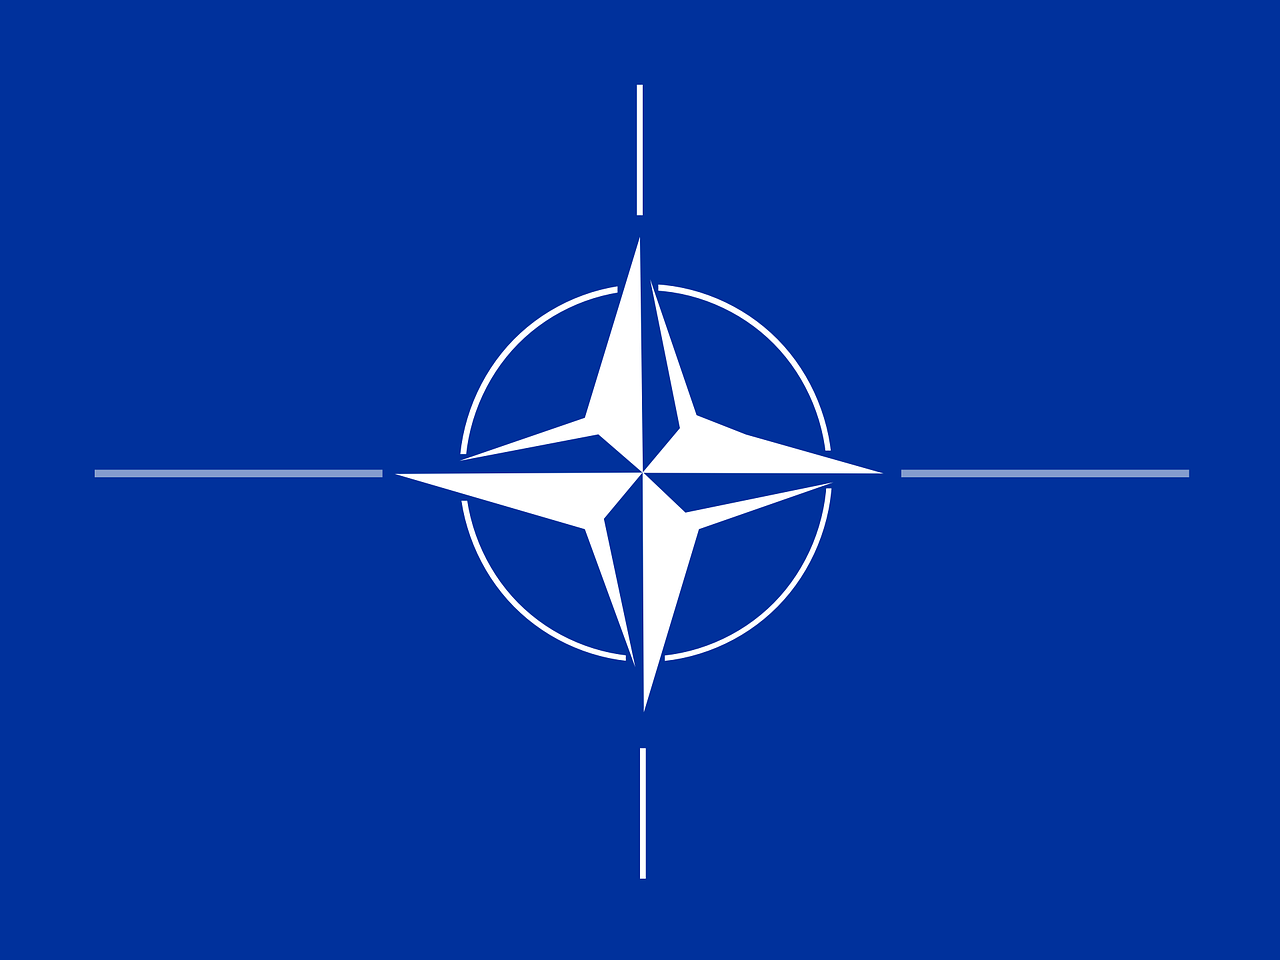 NATO symbol